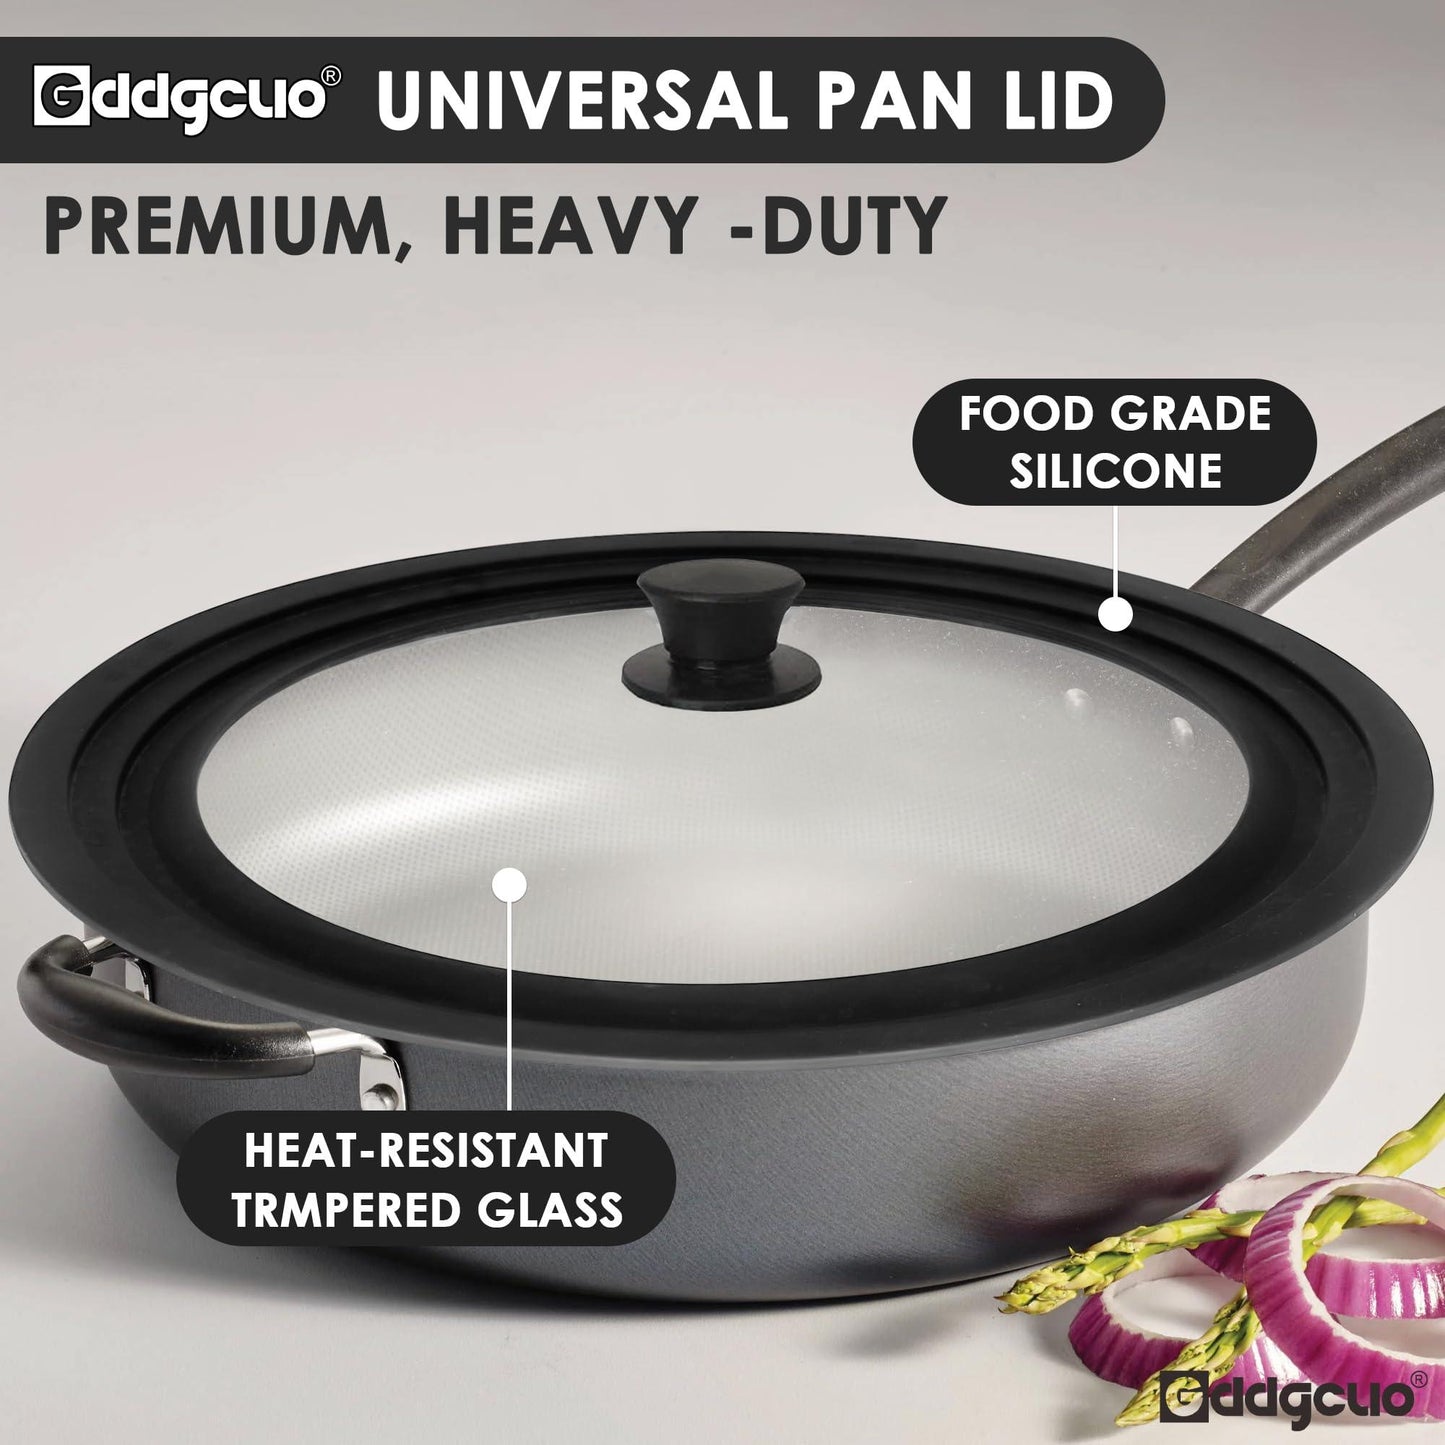 GDDGCUO Universal Pan Lids, Silicone Pot lids for Pots, Pans & Skillets, Fits 10", 11" & 12" Diameter, 7", 8" & 9" Diameter Cookware, 2 Pcs Frying Pan lids, Dishwasher Safe - CookCave